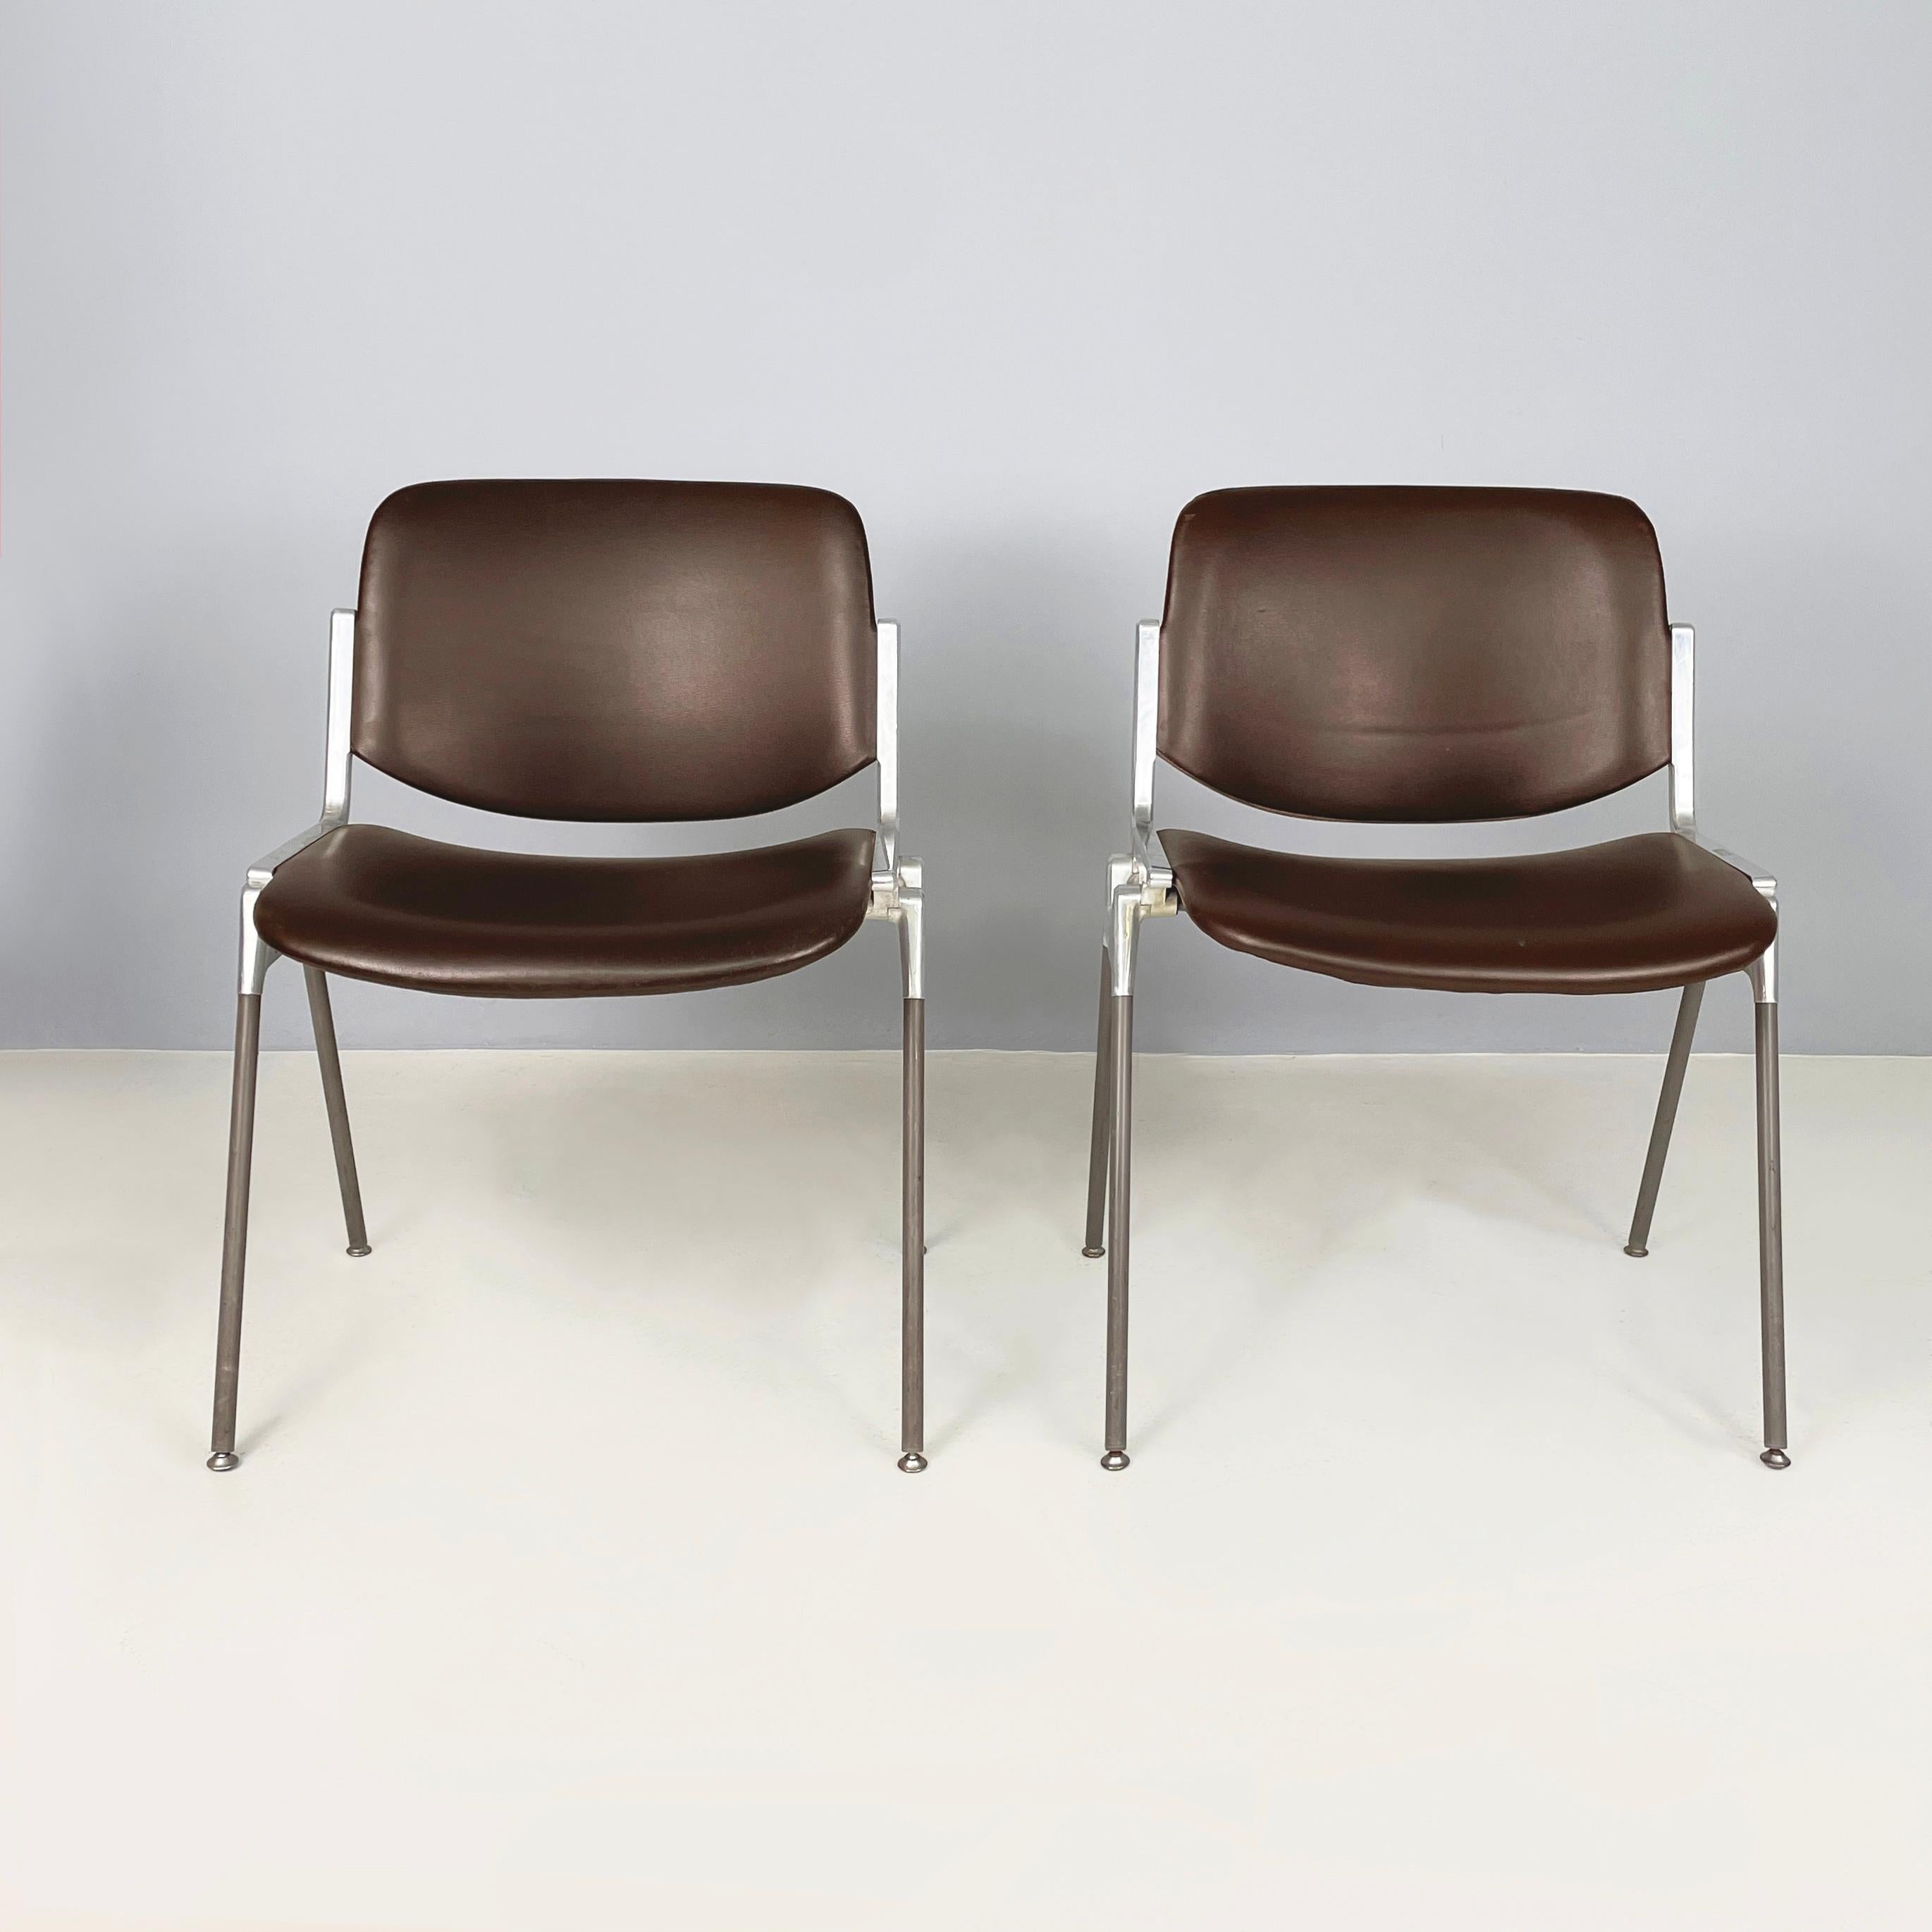 Moderne italienische Stühle der Moderne DSC von Giancarlo Piretti für Anonima Castelli, 1970er Jahre
Paar ikonische Stühle mod. DSC gepolstert und in dunkelbraunem Leder bezogen. Sitz und Rückenlehne sind rechteckig mit abgerundeten Ecken. Das